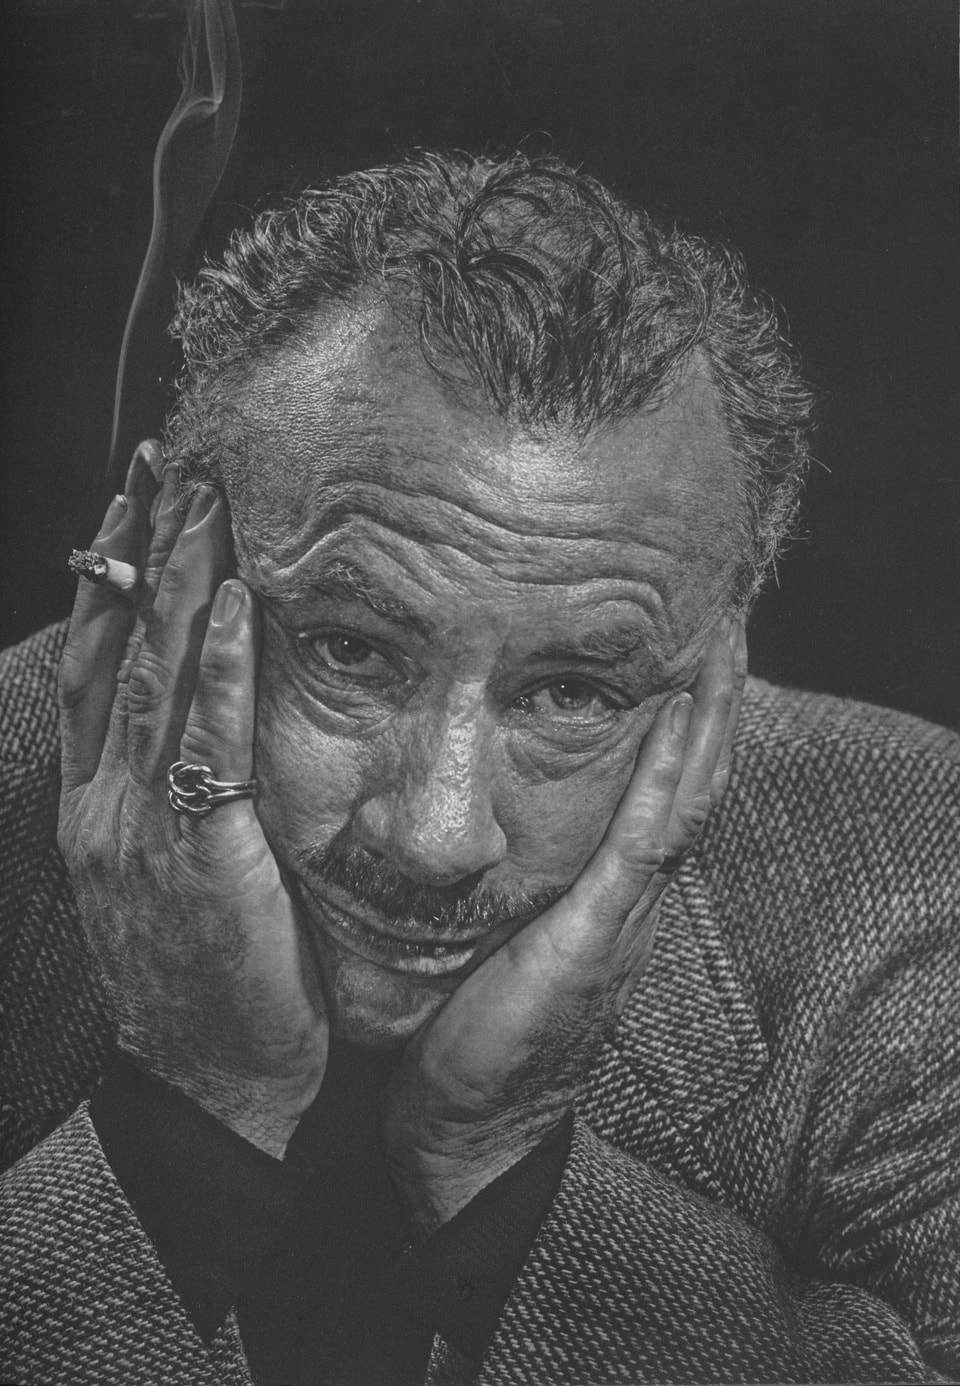 John Ernst Steinbeck by Yousuf Karsh, 1954